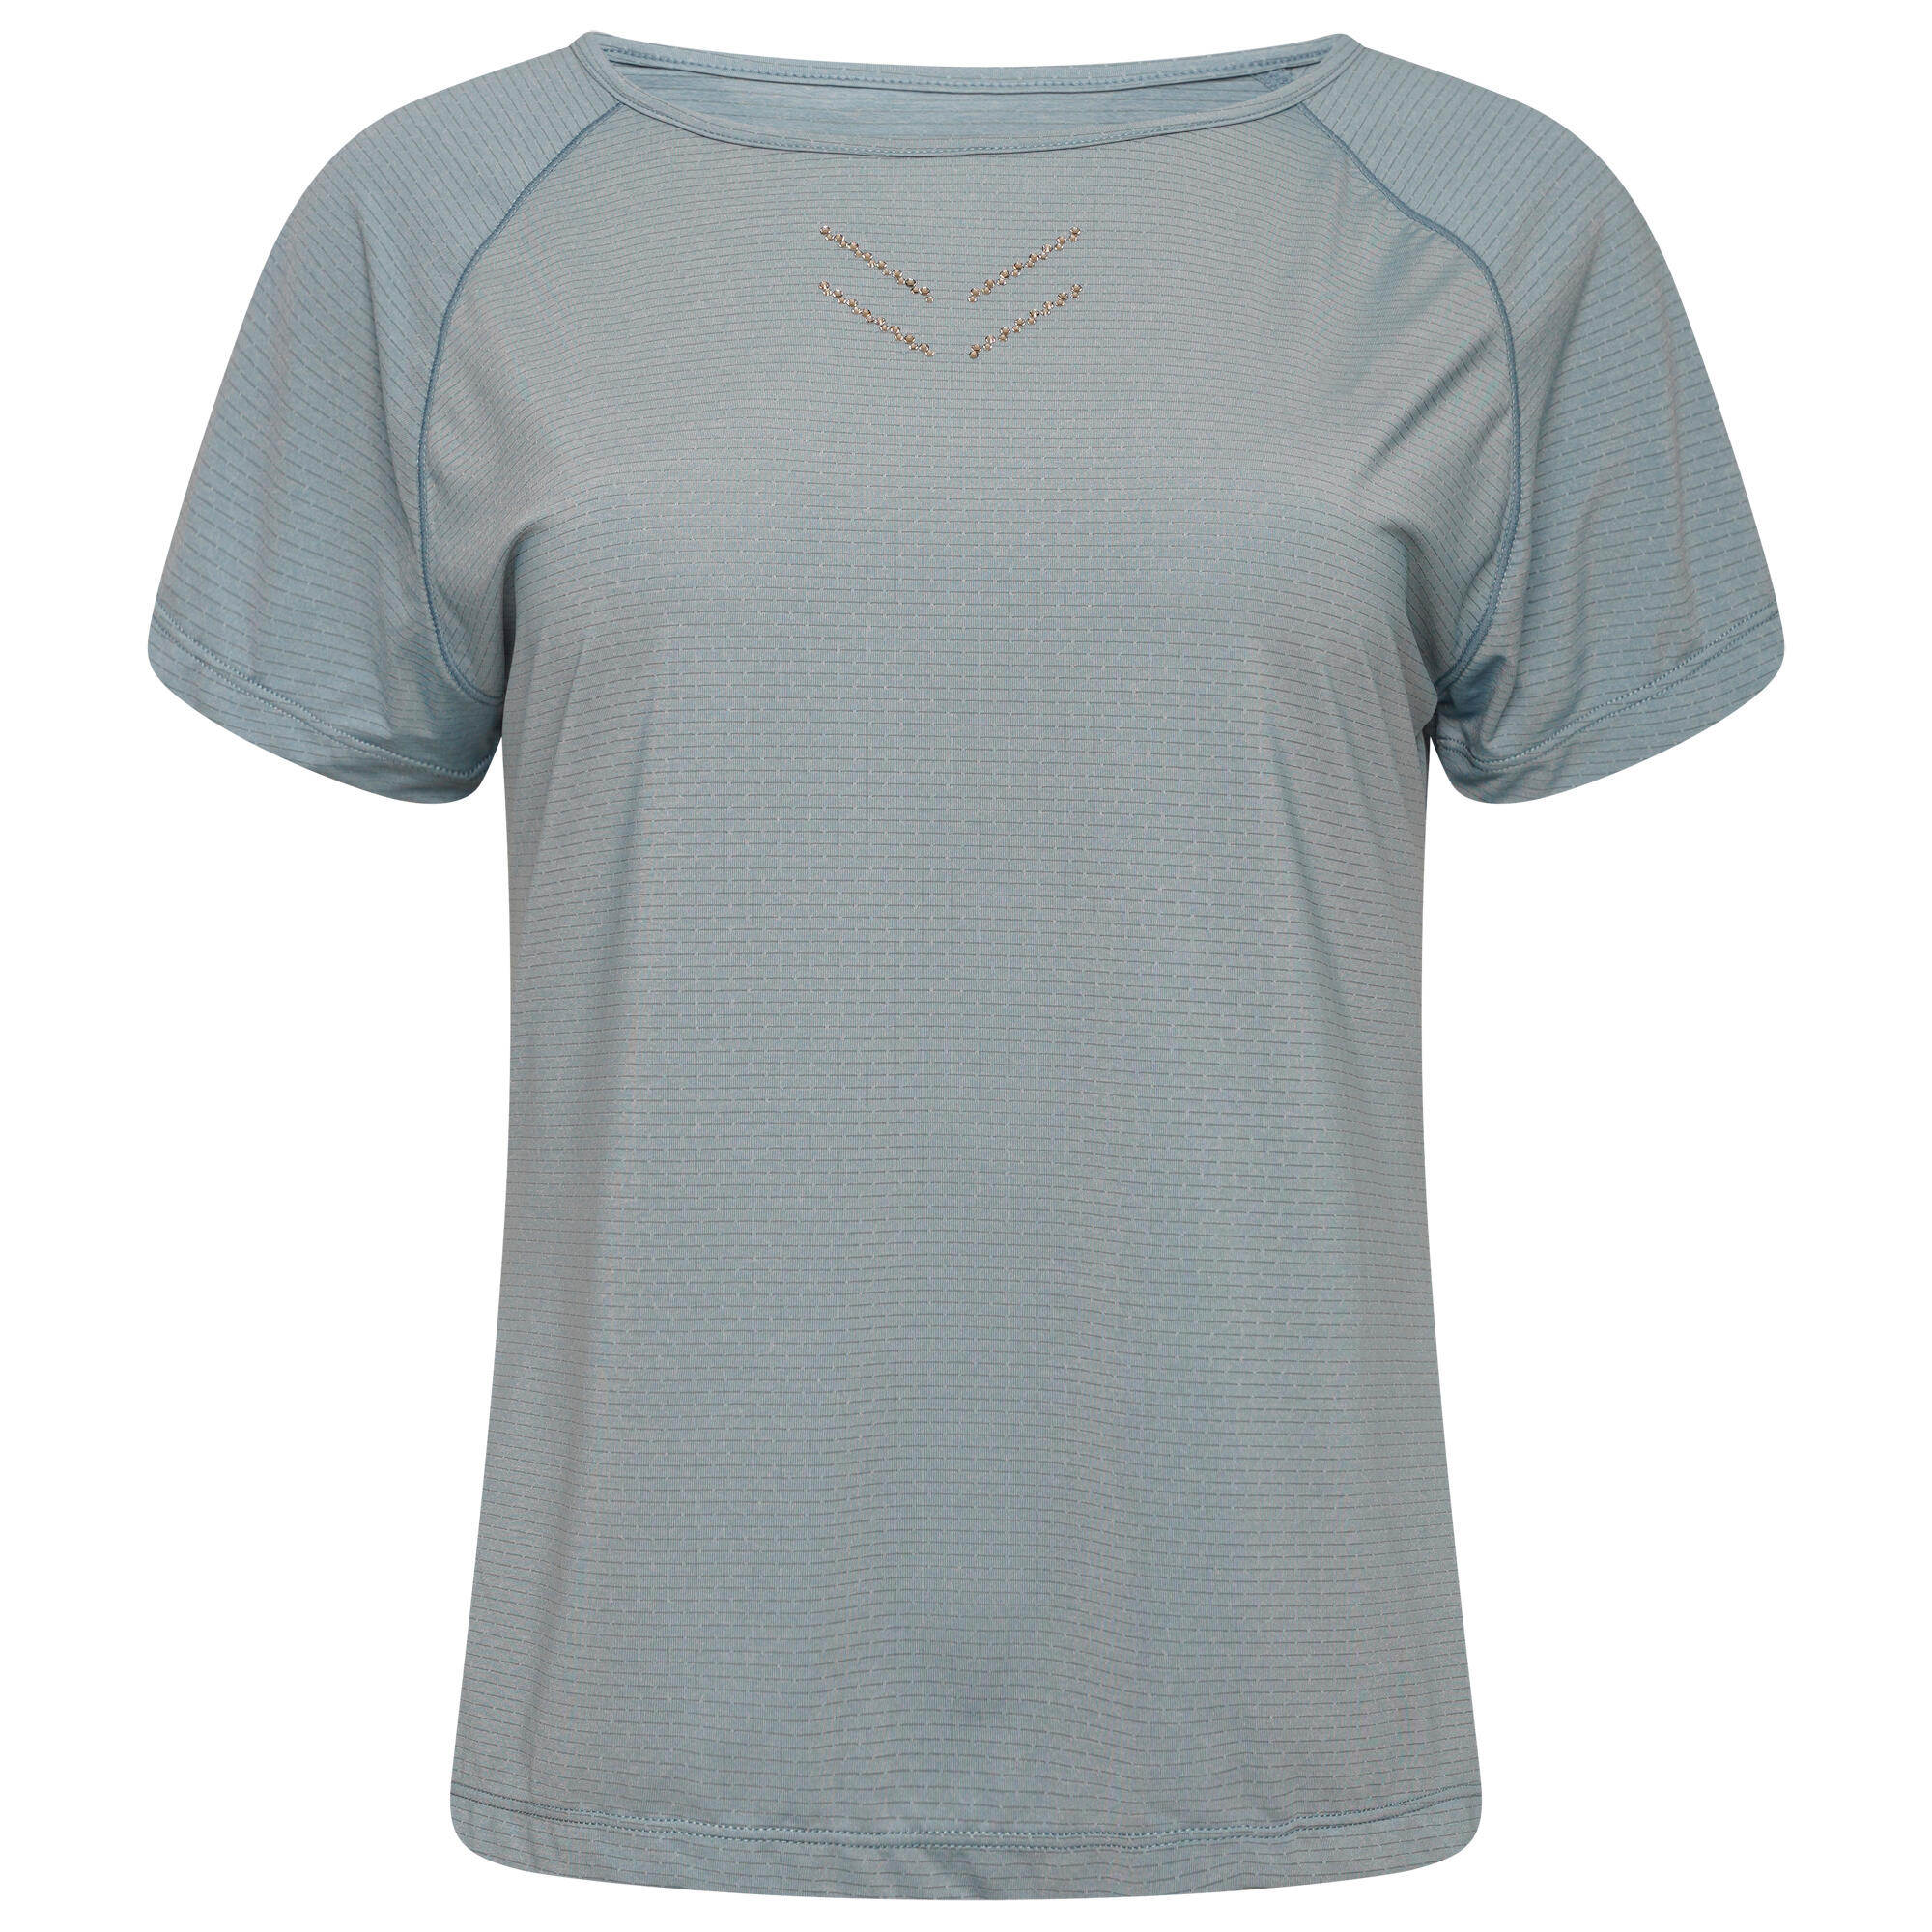 Cyrstallize Women's Fitness Short Sleeve T-Shirt - Blue Stone 5/5